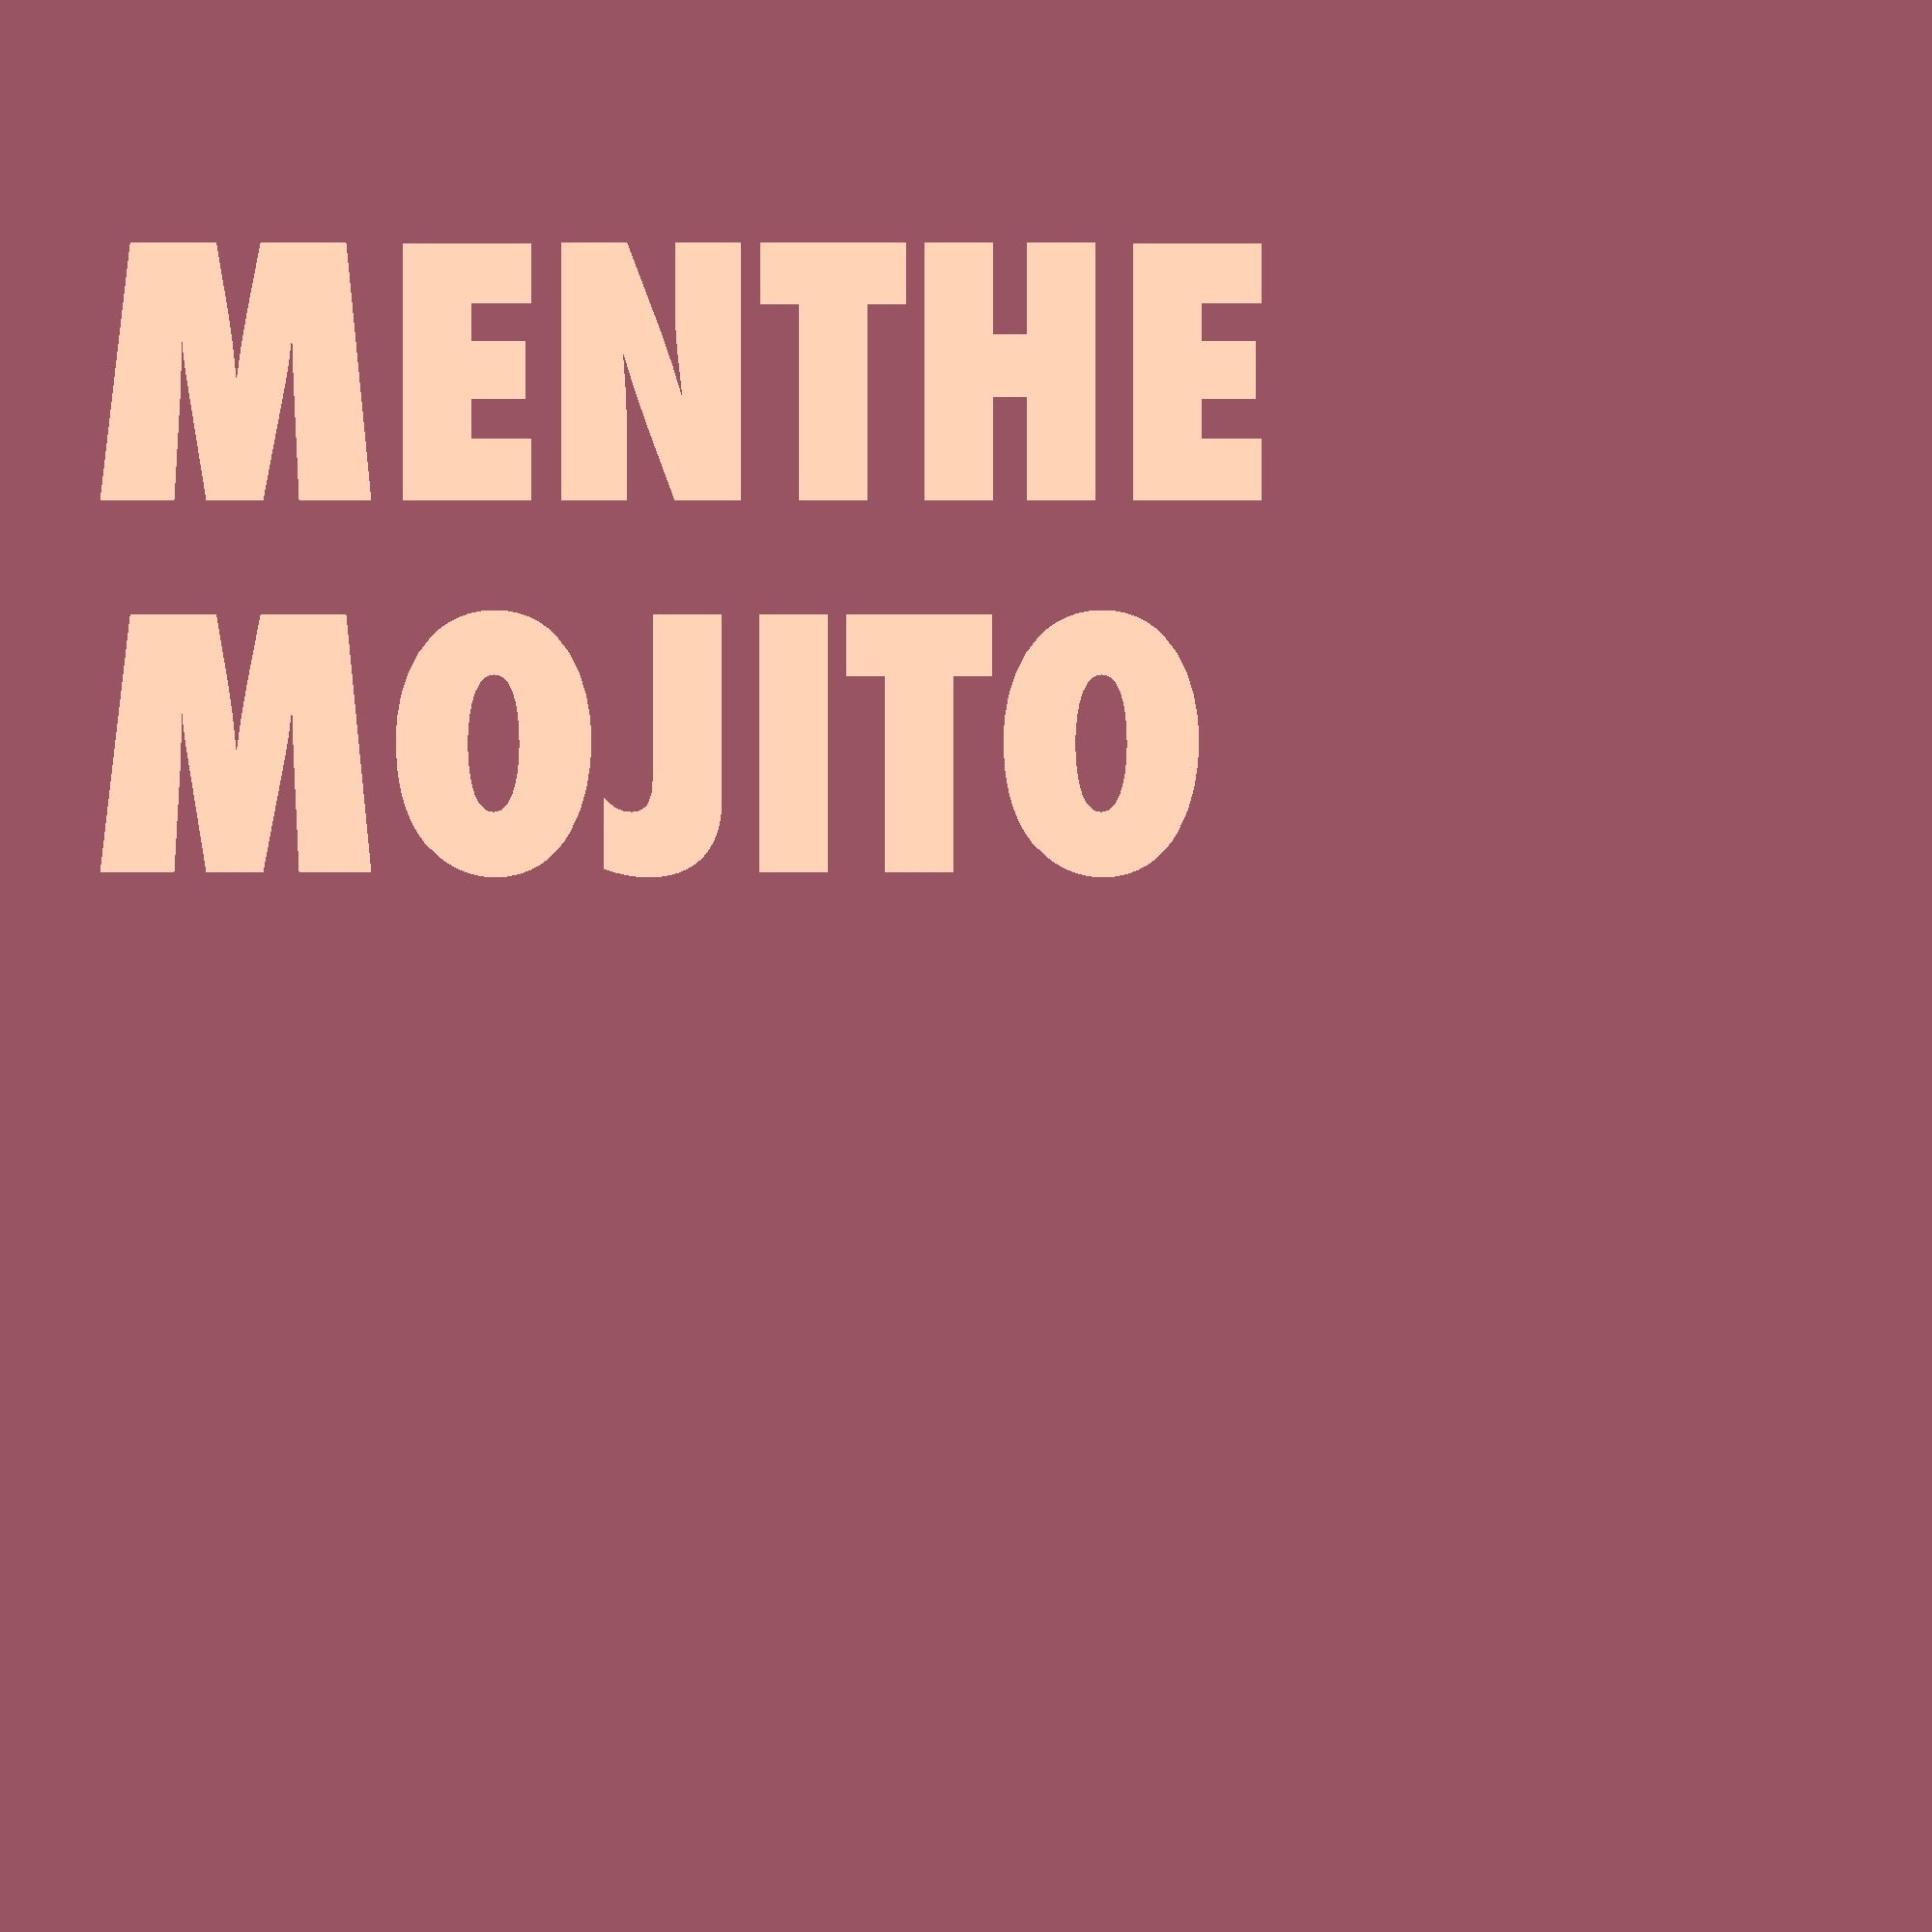 Menthe mojito